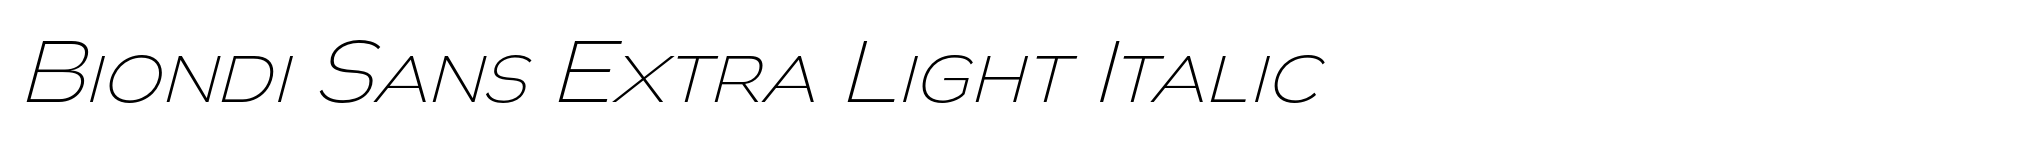 Biondi Sans Extra Light Italic image